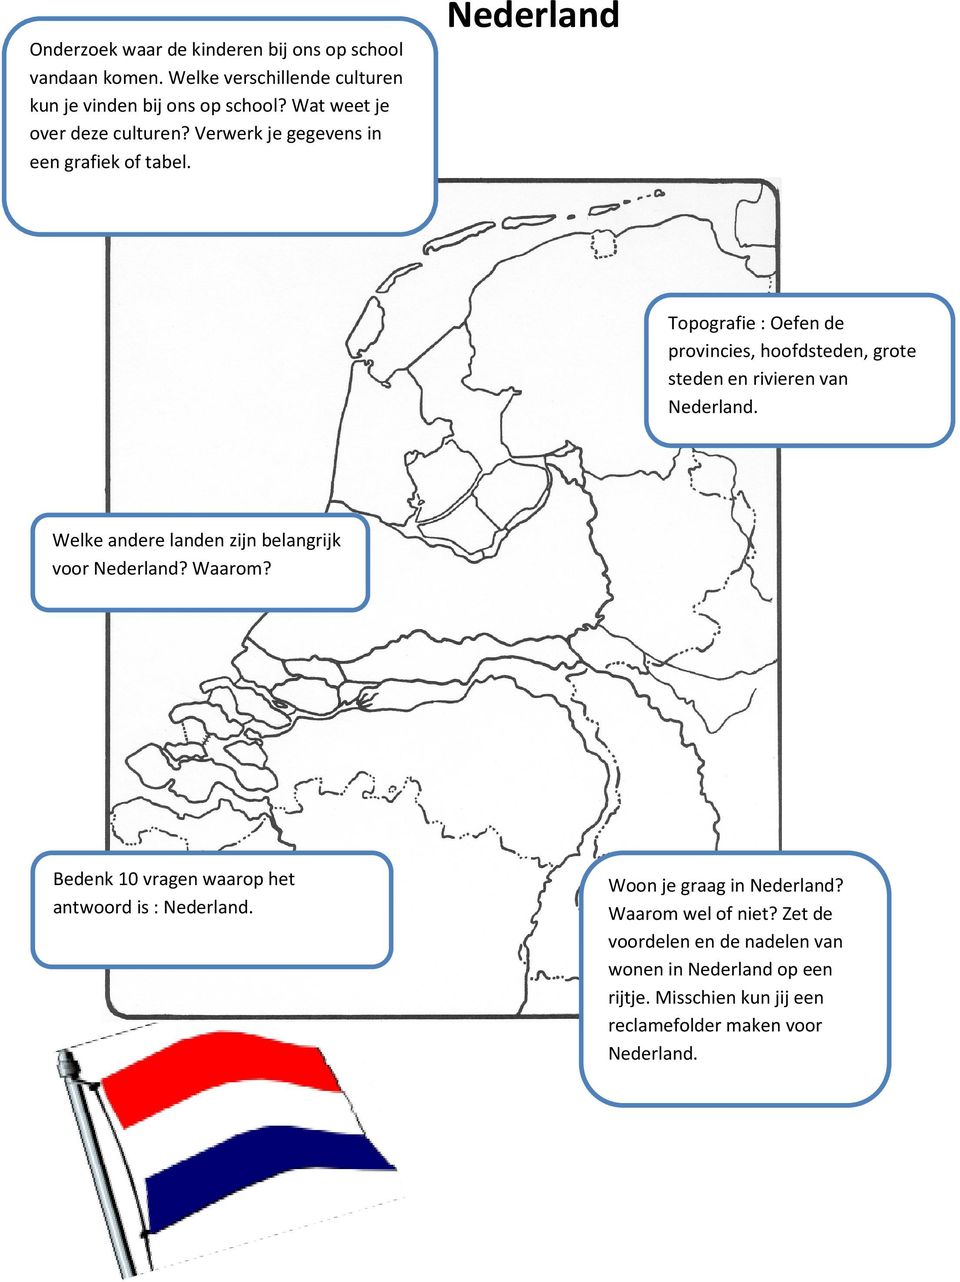 Topografie : Oefen de provincies, hoofdsteden, grote steden en rivieren van Nederland. Welke andere landen zijn belangrijk voor Nederland? Waarom?